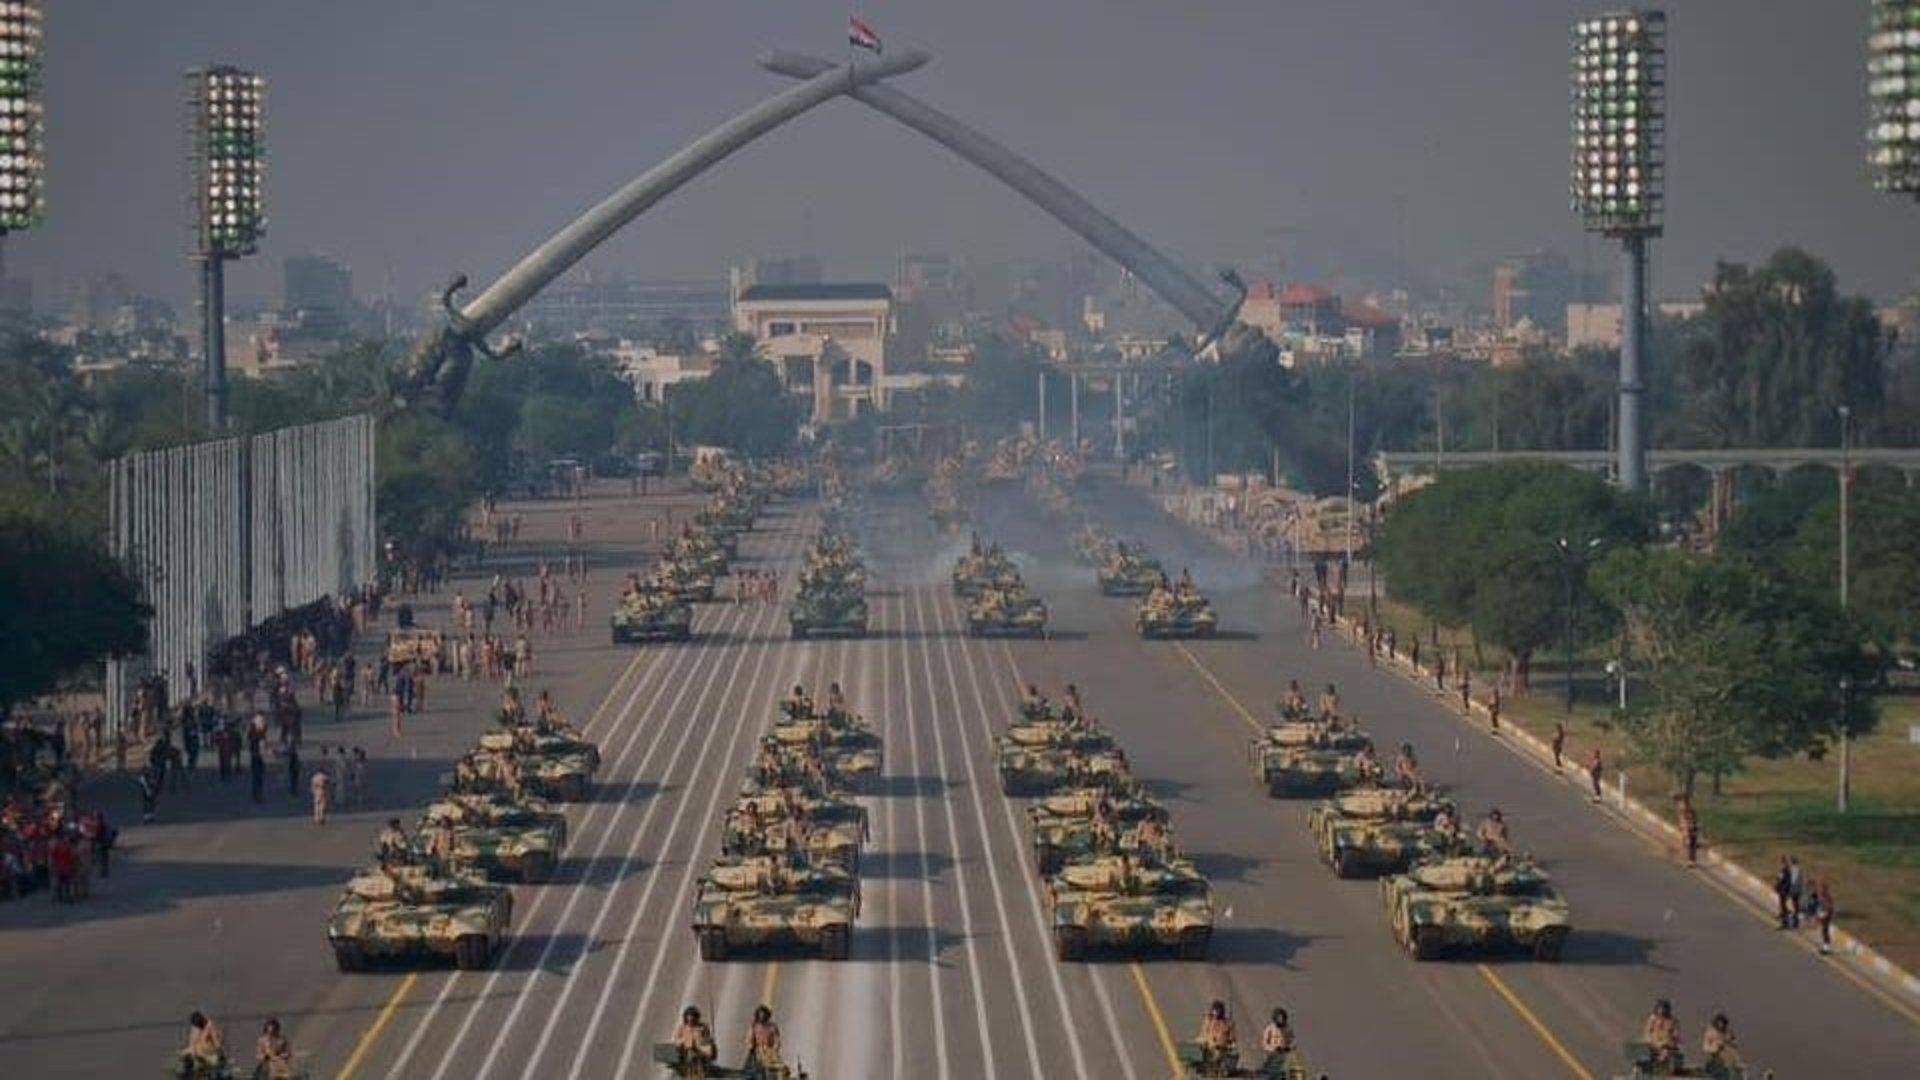 صور من ساحة الاحتفالات في بغداد: استعراض عسكري بالذكرى 103 على تأسيس الجيش